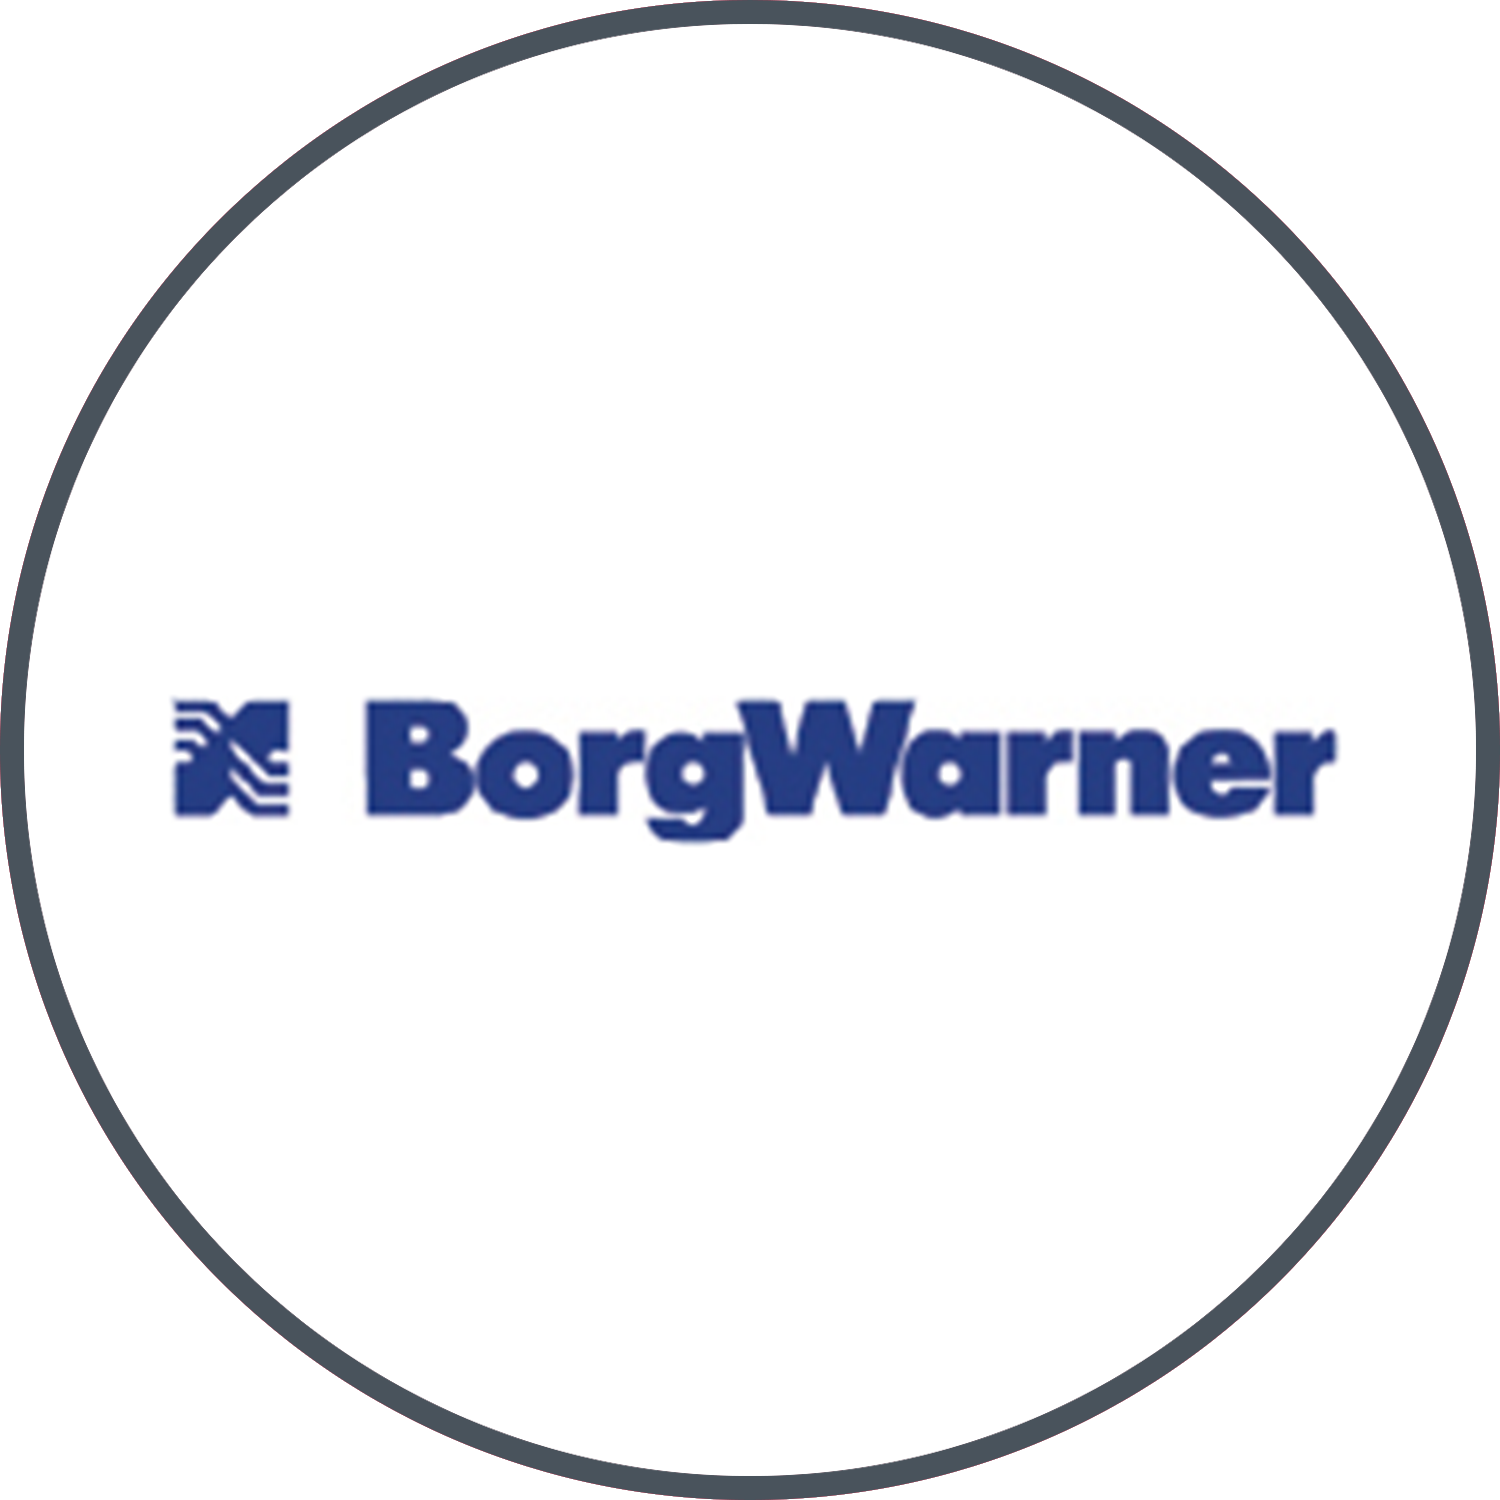 wahler-logo.png